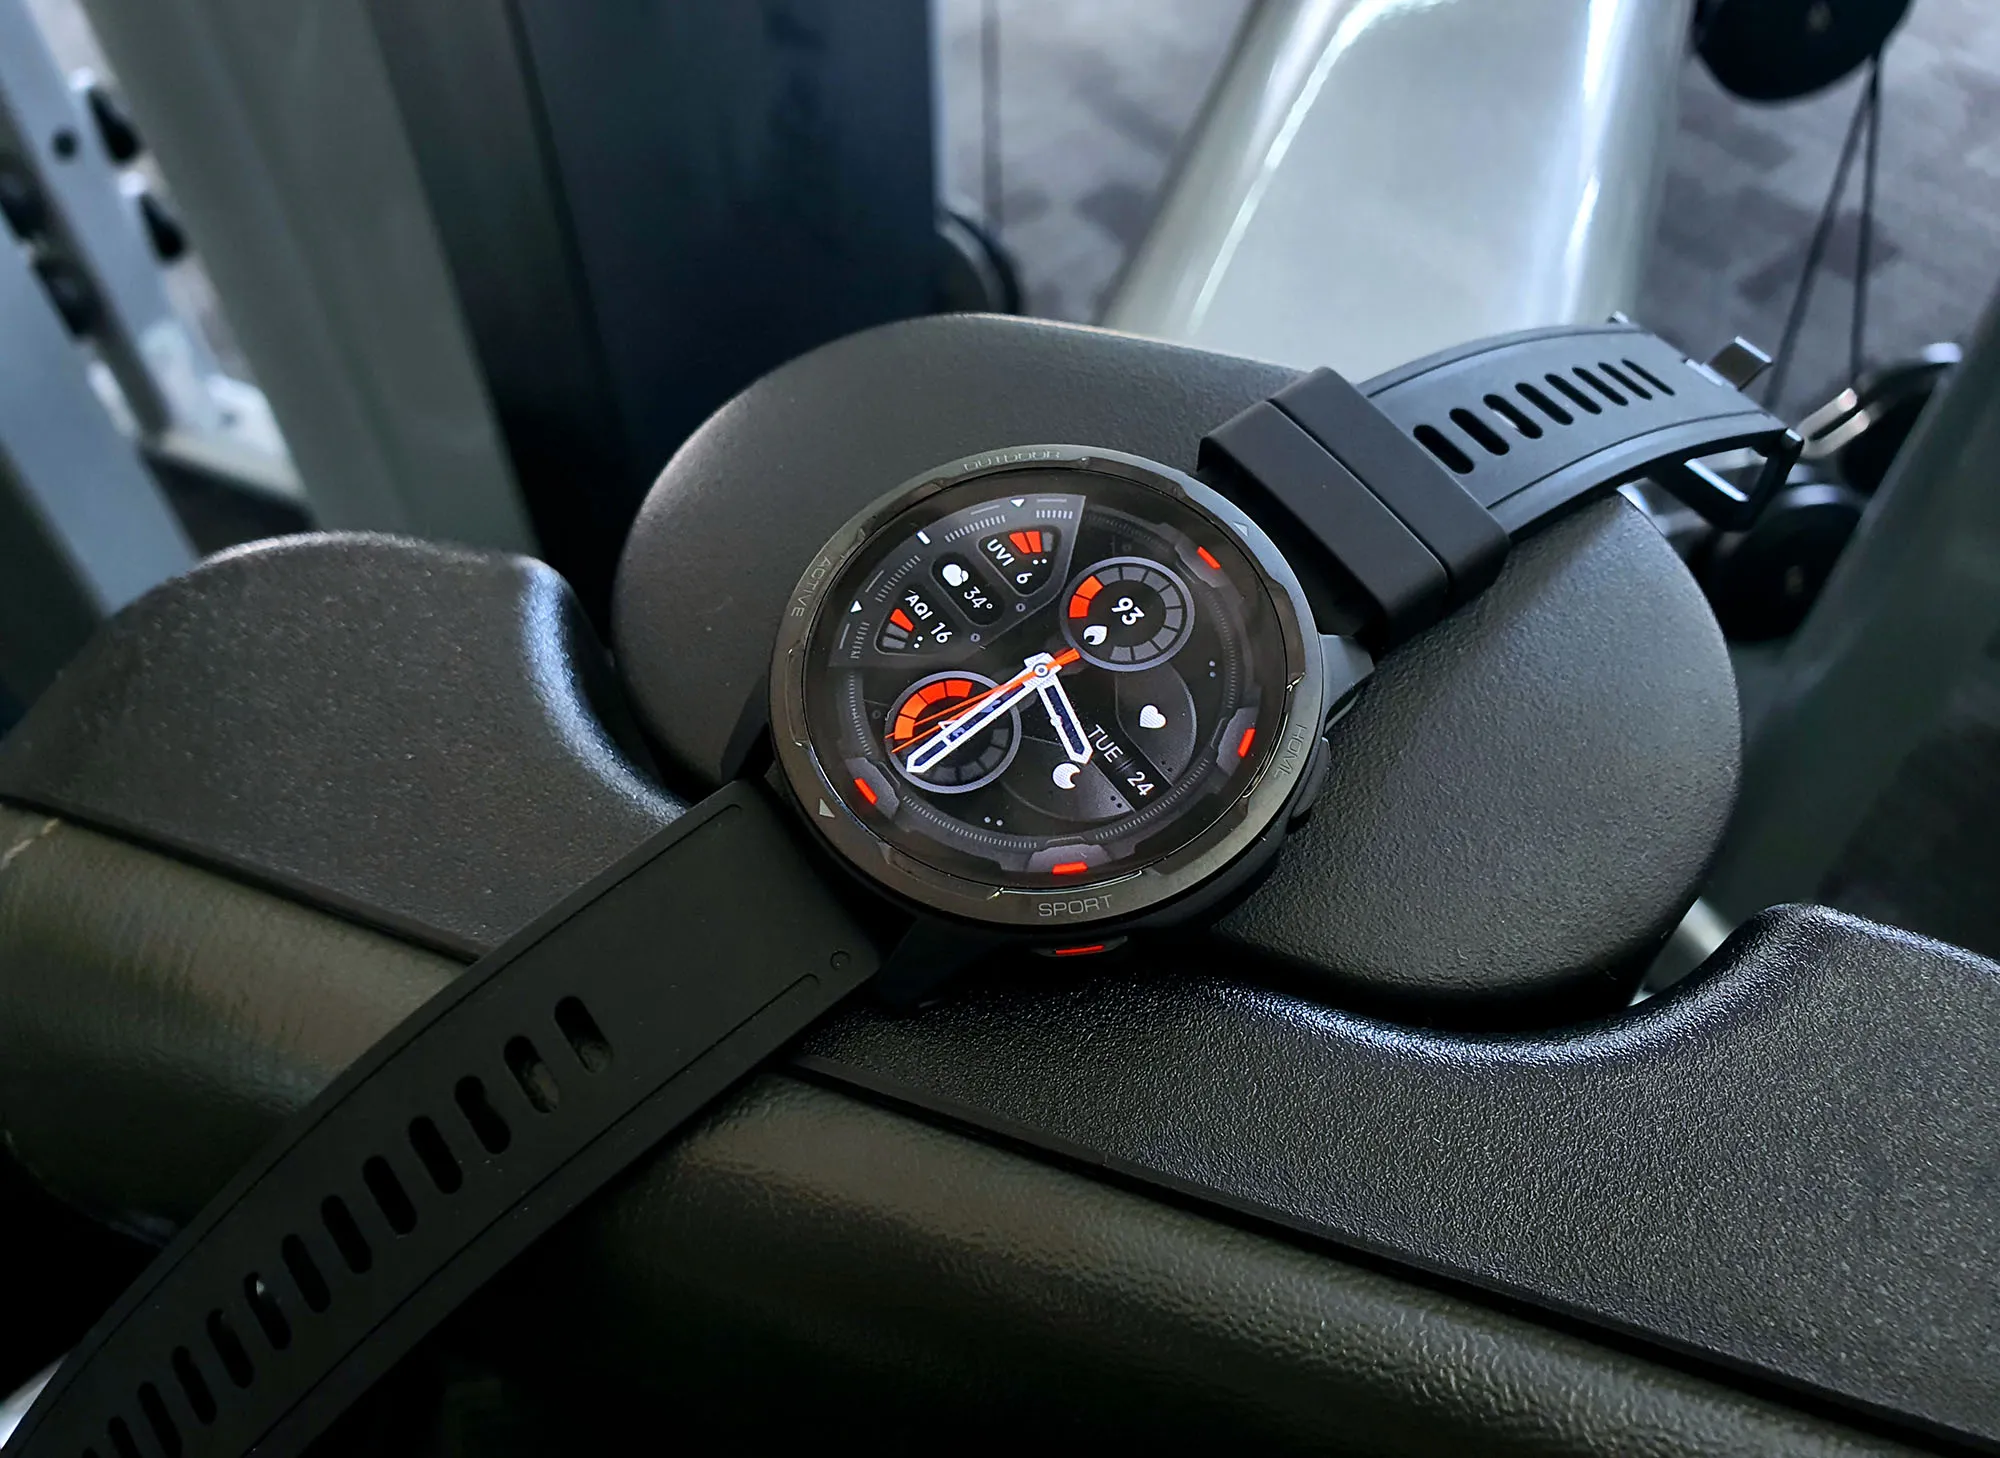 ساعت هوشمند شیائومی مدل S1 بند لاستیکی